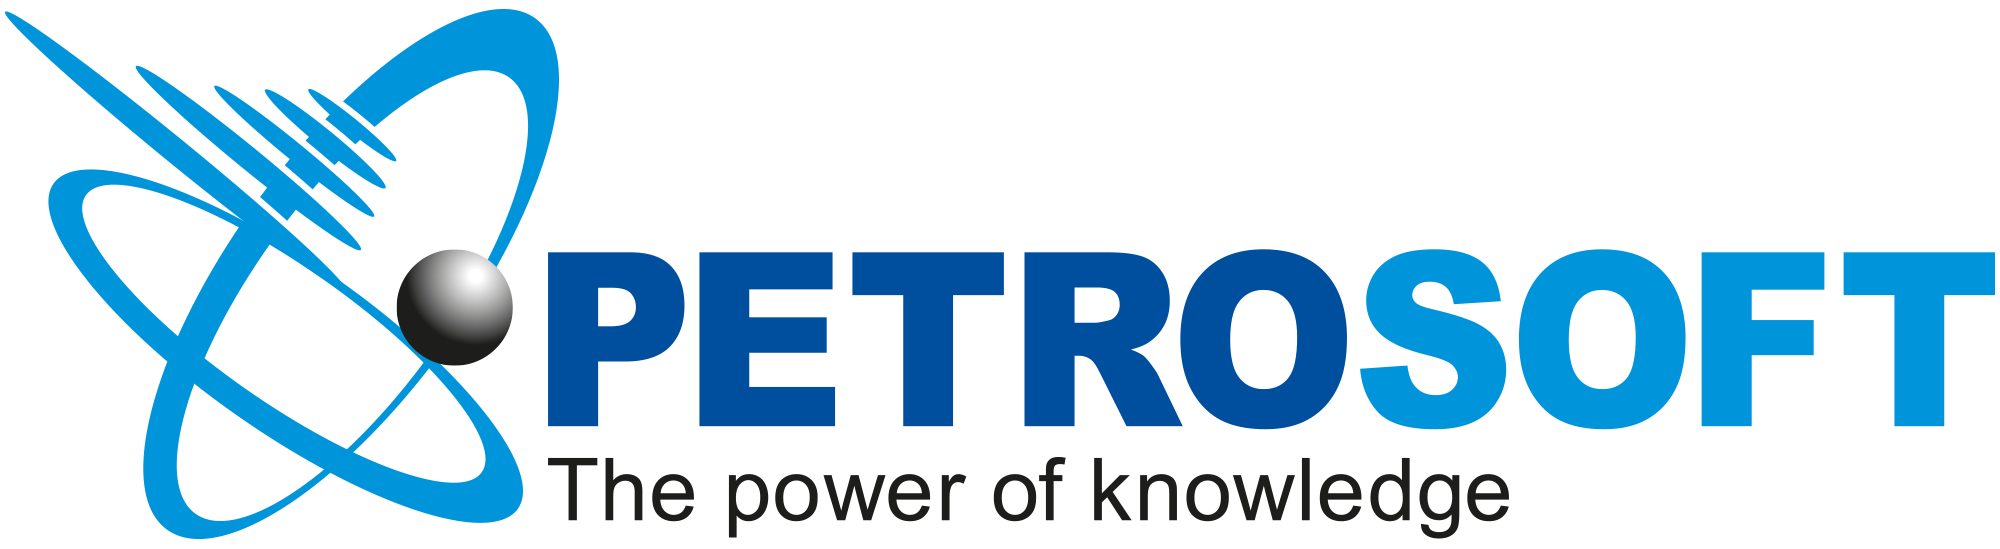 Petrosoft Logo 2 color 1